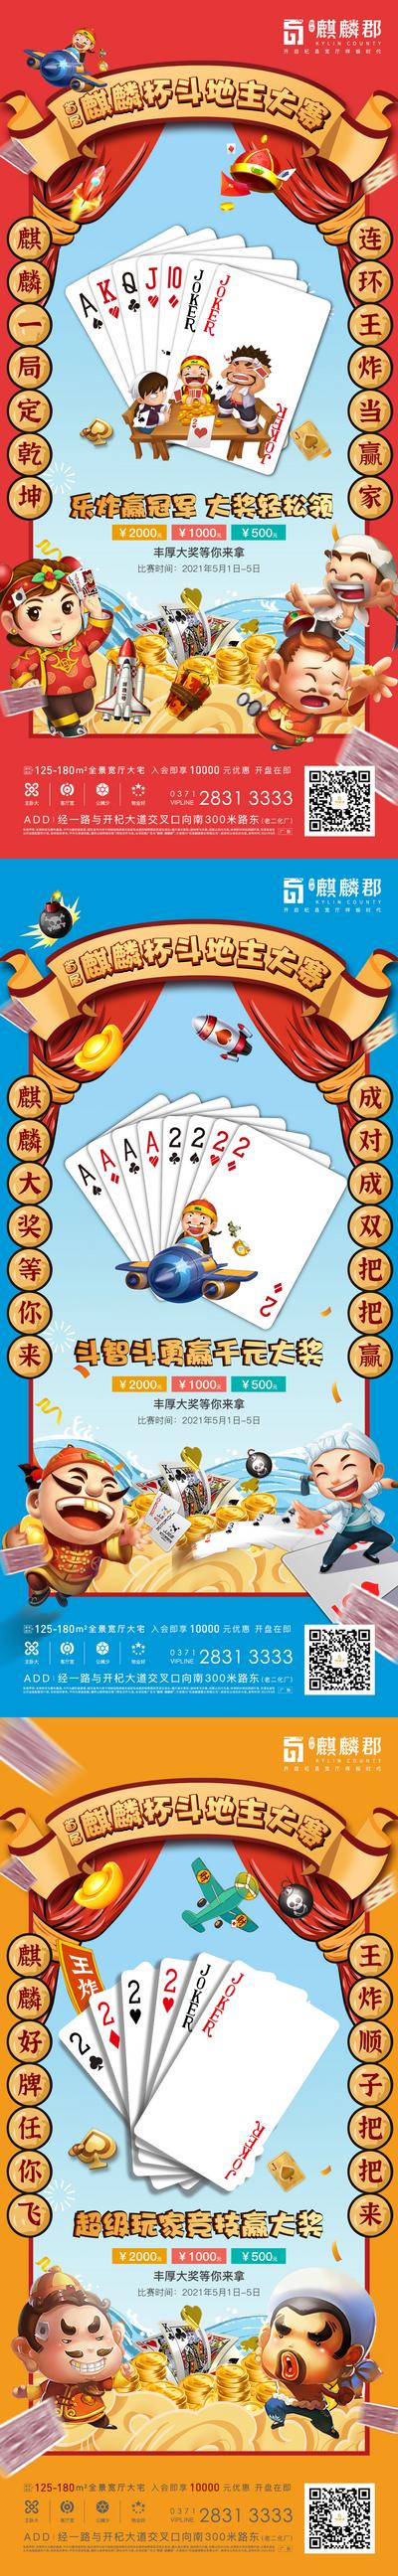 南门网 海报 地产 活动 棋牌 扑克 斗地主 掼蛋 纸牌 争霸赛 系列